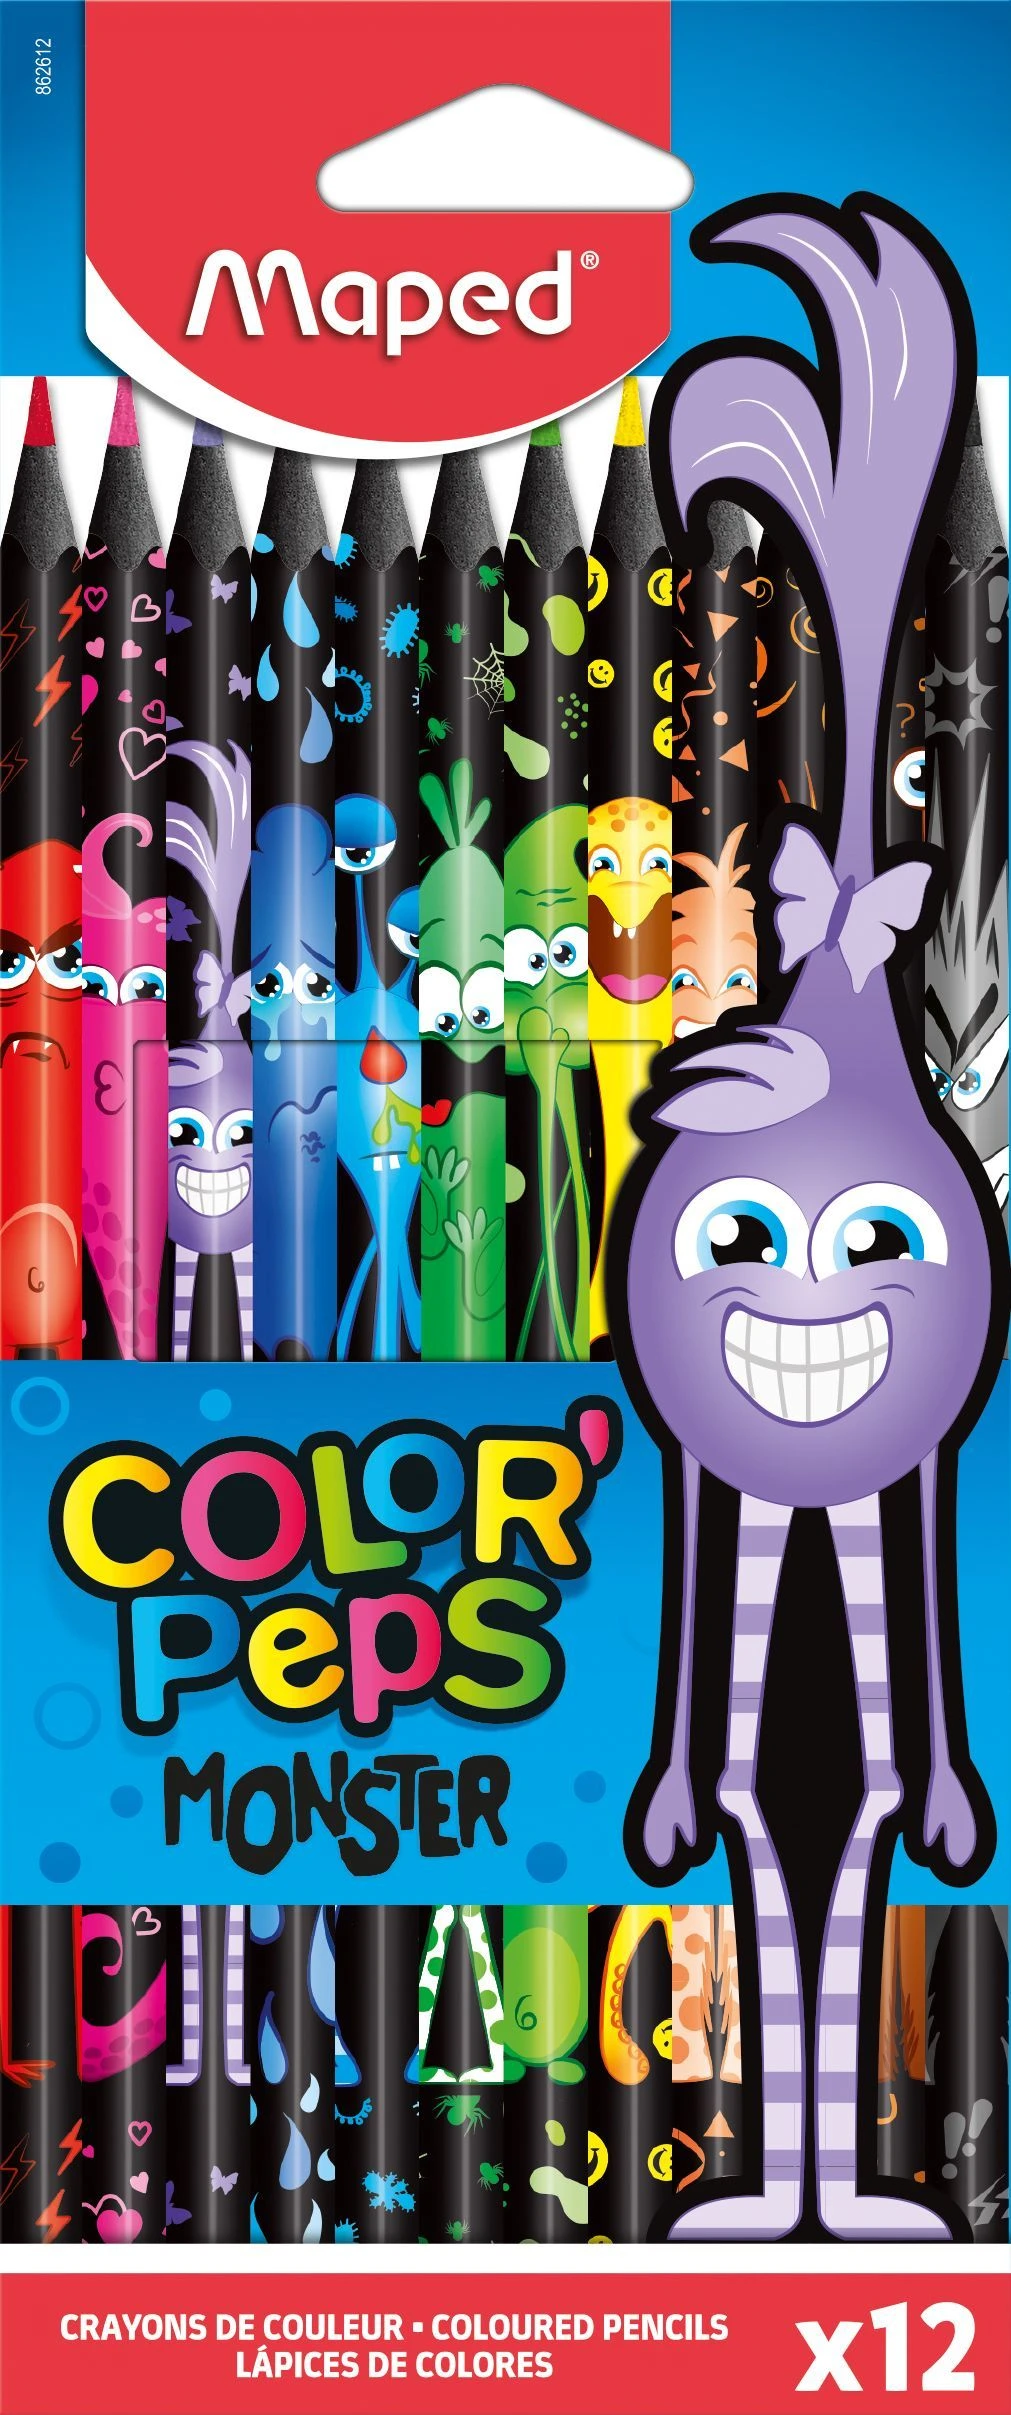 Набор цветных карандашей MAPED COLOR'PEPS BLACK MONSTER 12 цв. пластик трехгран.